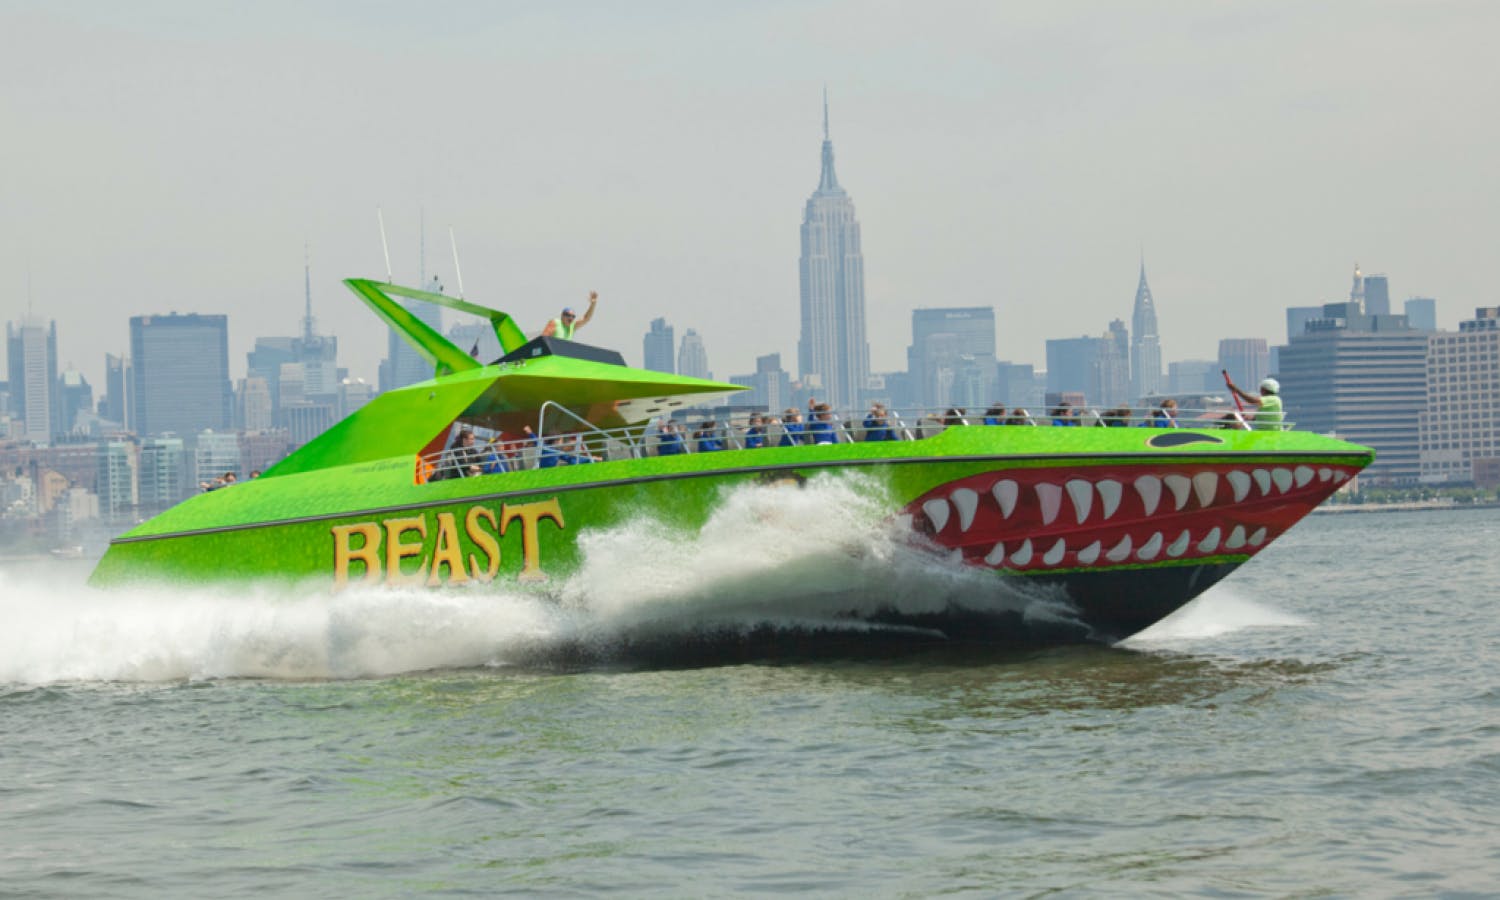 Die BEAST-Schnellbootfahrt in New York